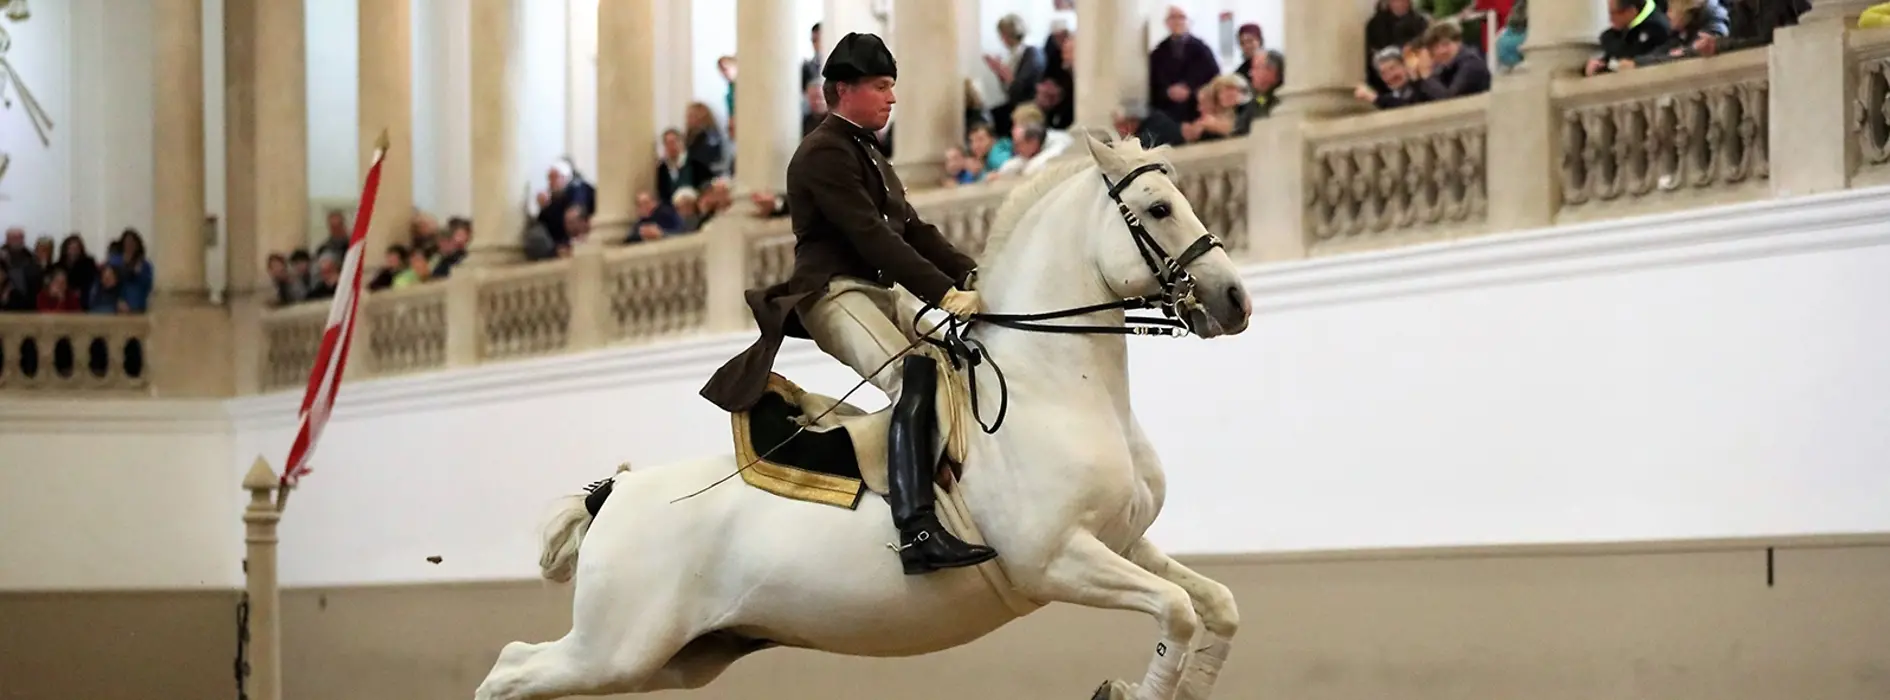 Escuela Española de Equitación, Lipizzanos, jinete ejecutando un salto